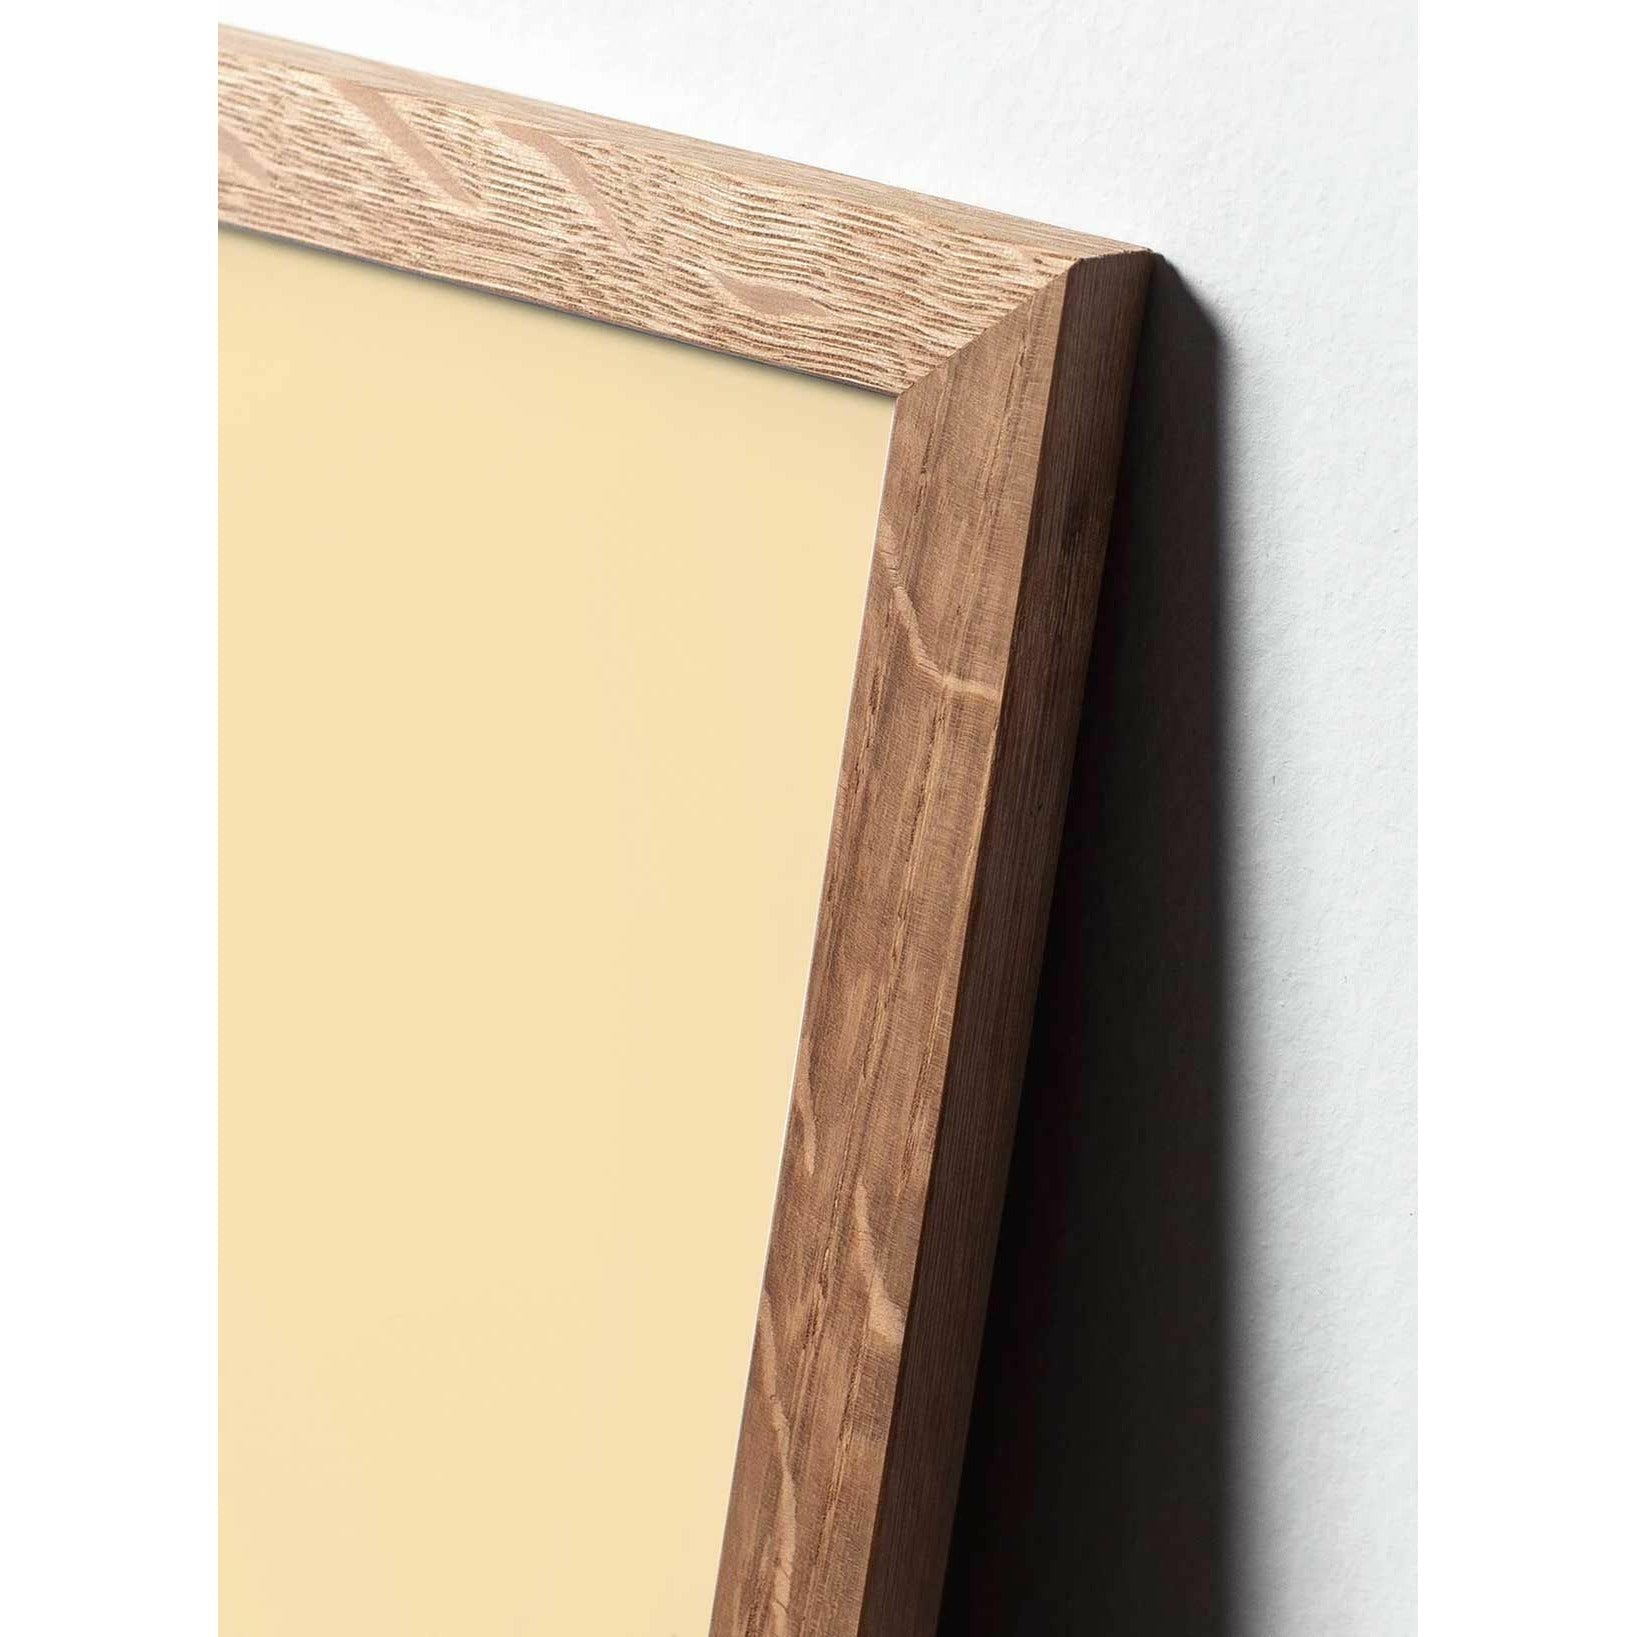 Póster clásico de cono de pino de creación, marco hecho de madera clara A5, fondo amarillo